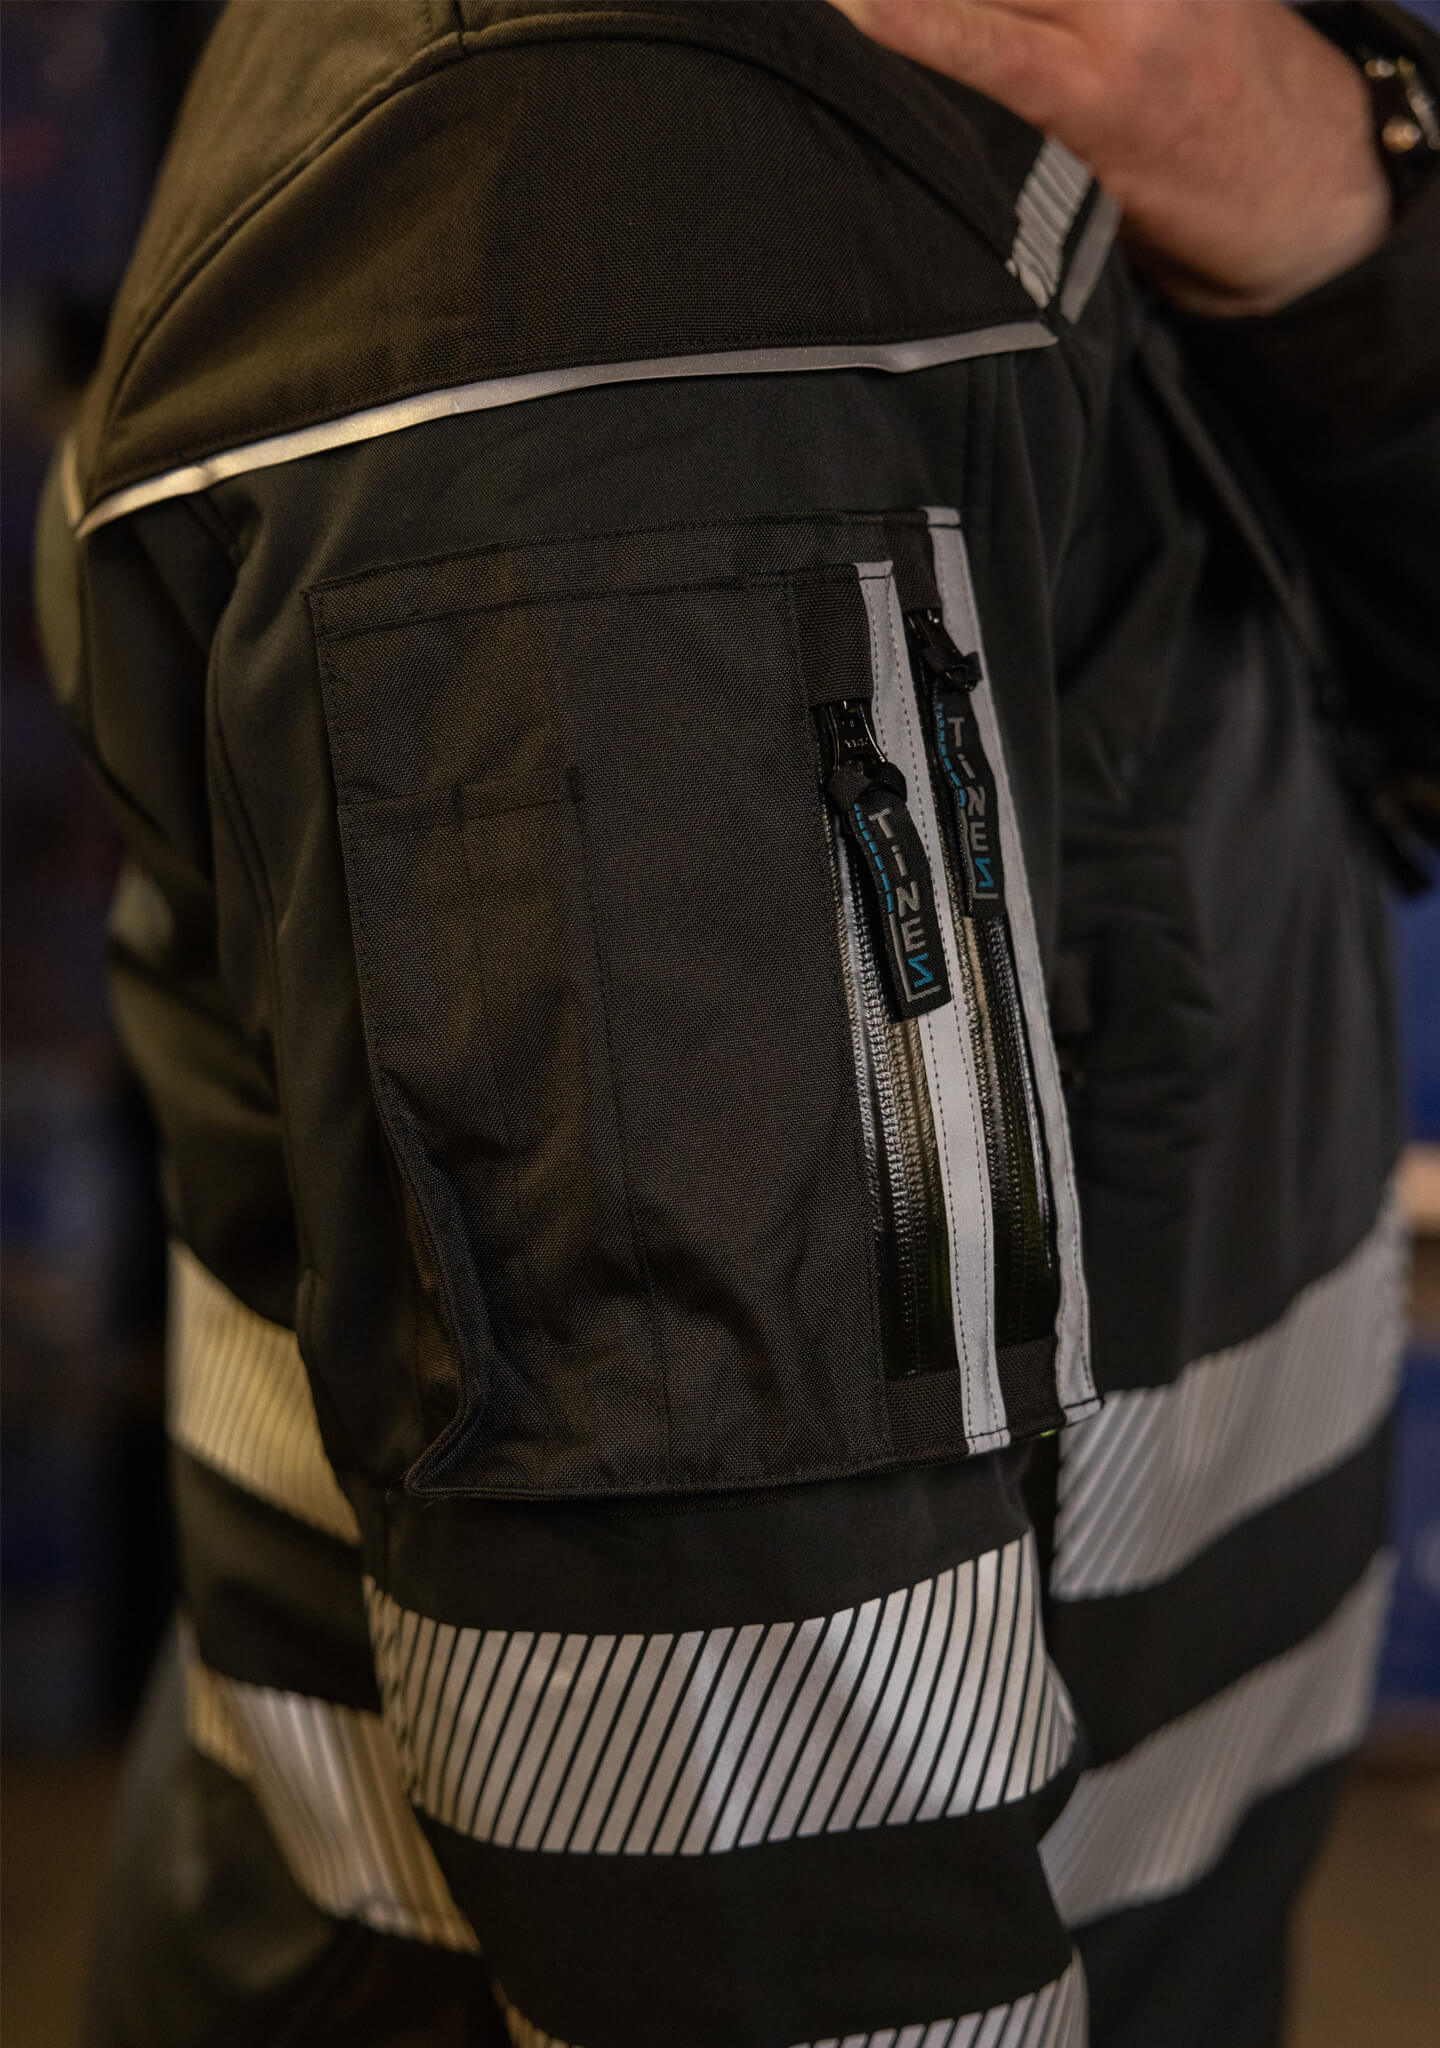 Hier ist eine Softshelljacke abgebildet, die winddicht und wasserabweisend ist. Eine durchdachte Taschenplatzierung ermöglicht das Tragen der Jacke im Klettergurt beim Industrieklettern in der Höhe (Ansicht Nahaufnahme Tasche rechts)